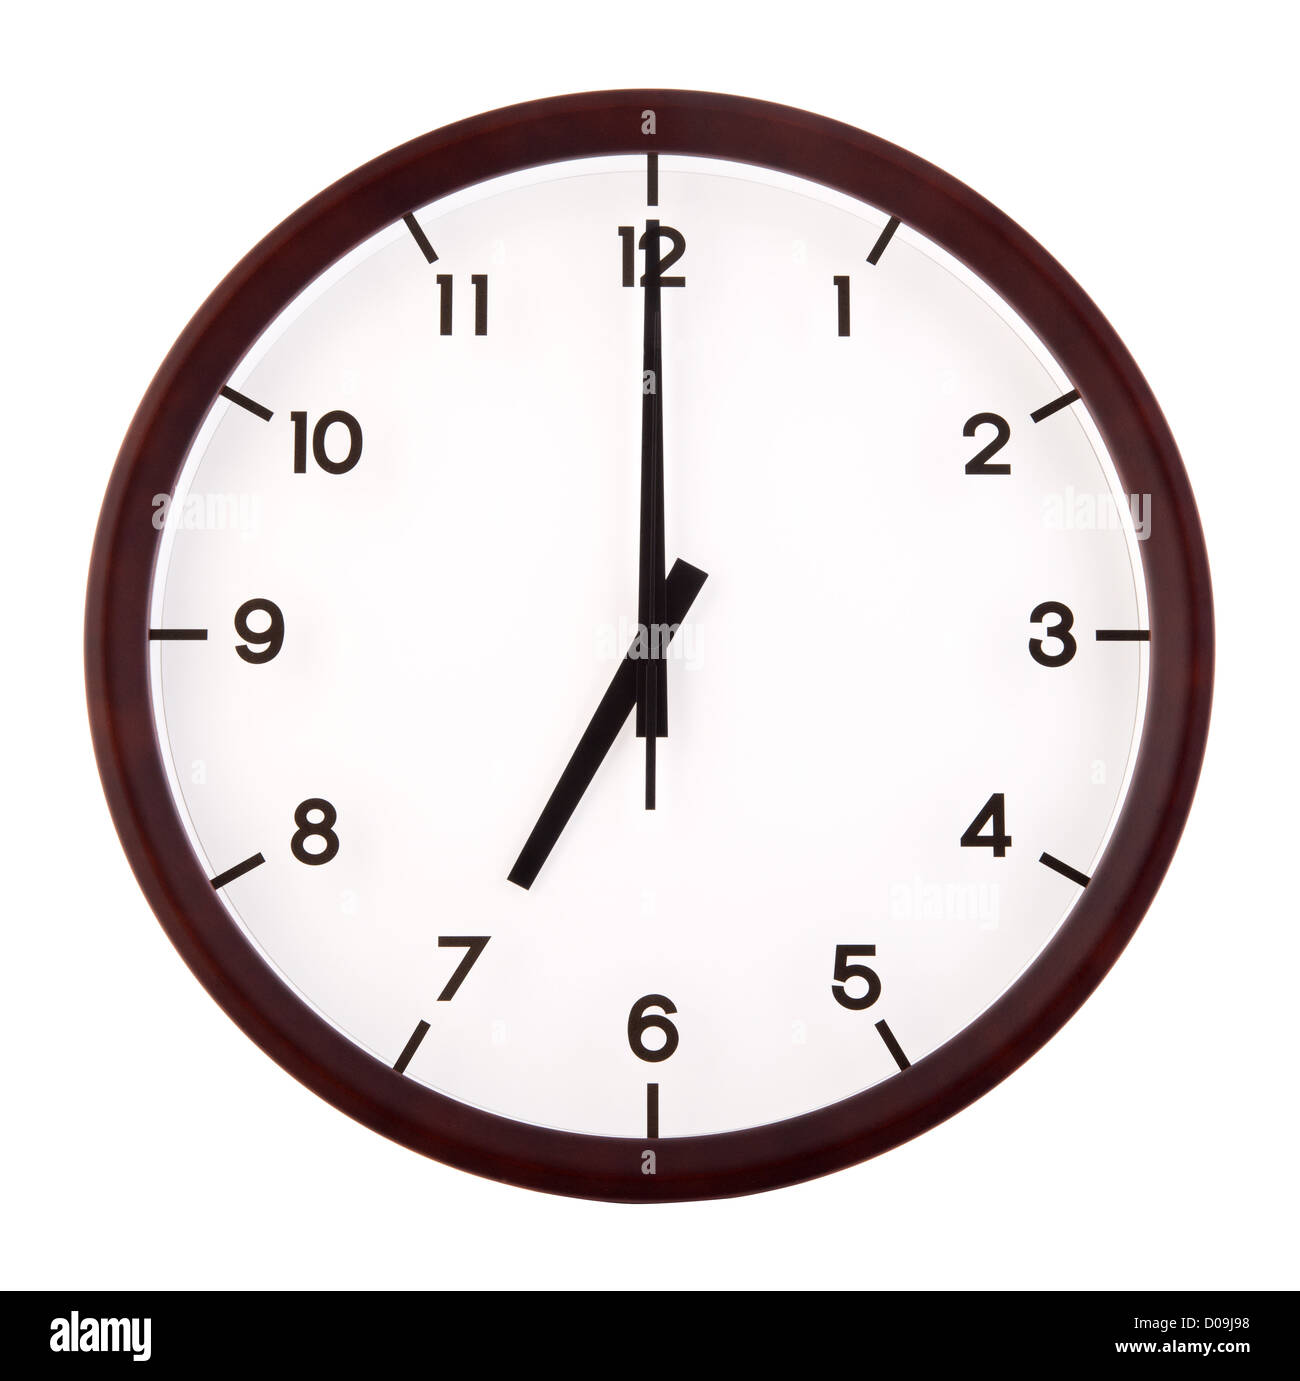 Classic orologio analogico rivolto a ore 7, isolato su sfondo bianco Foto  stock - Alamy